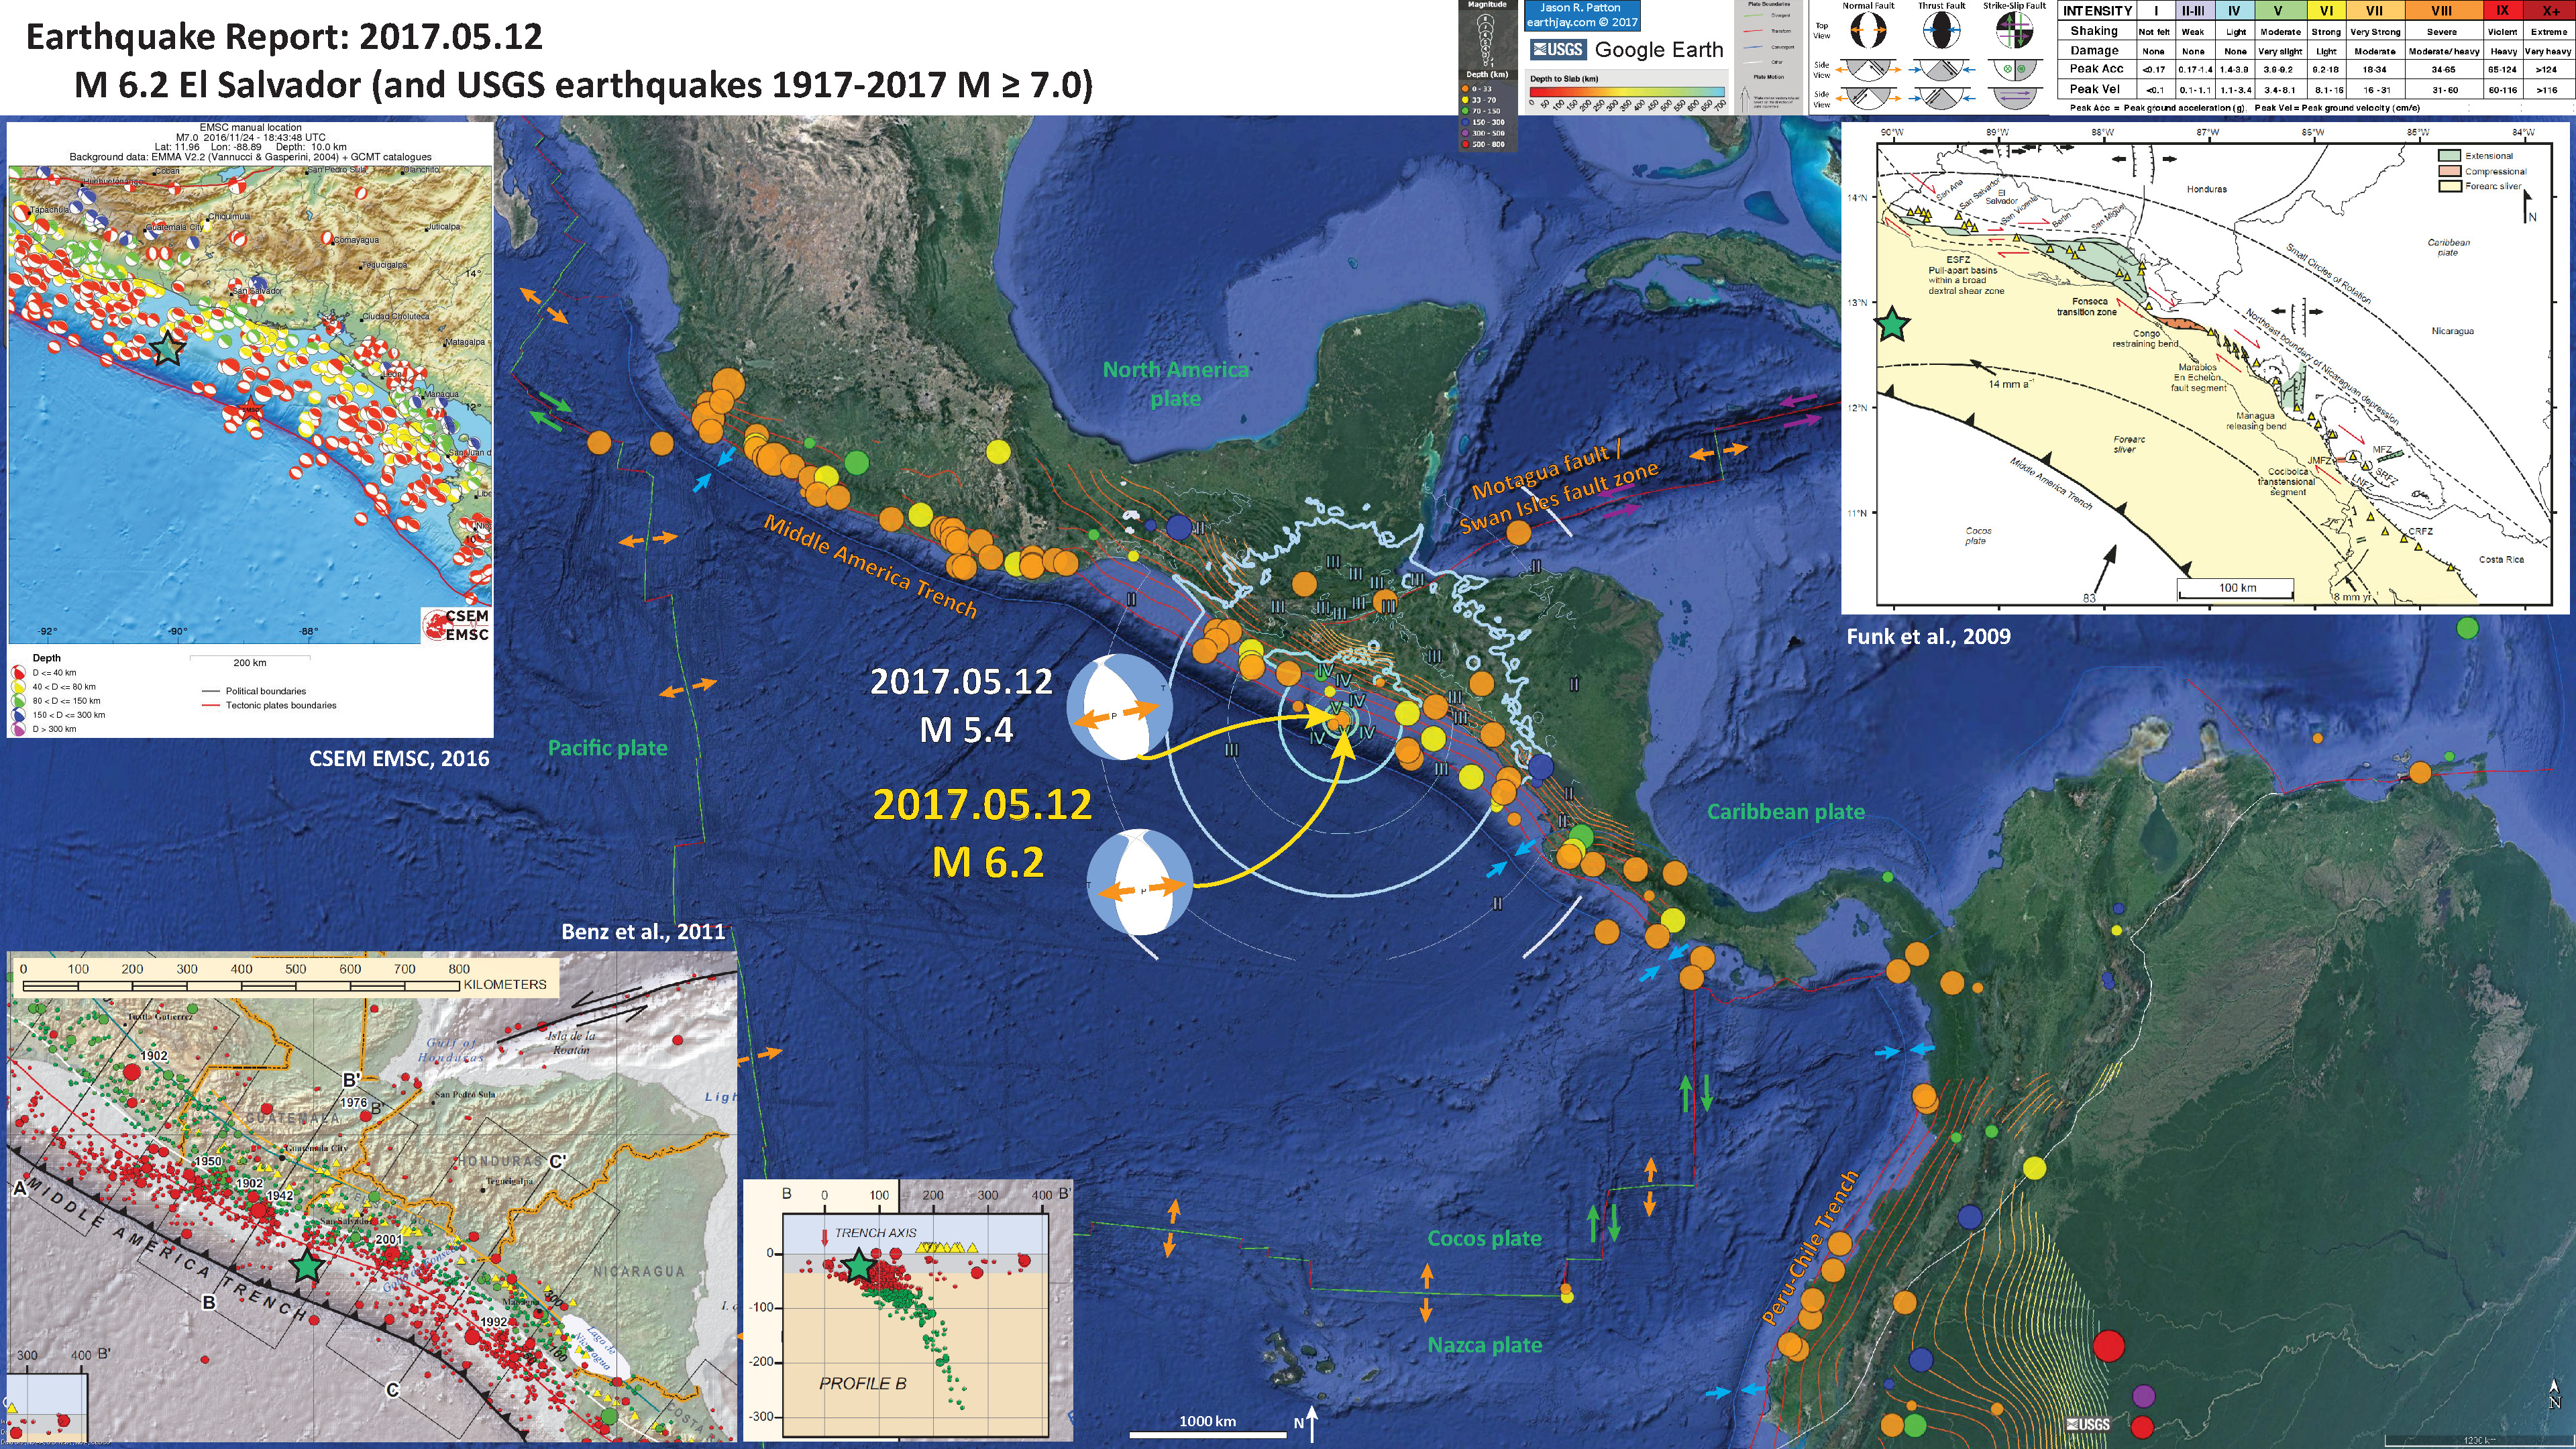 Earthquake Report: El Salvador - Jay Patton online